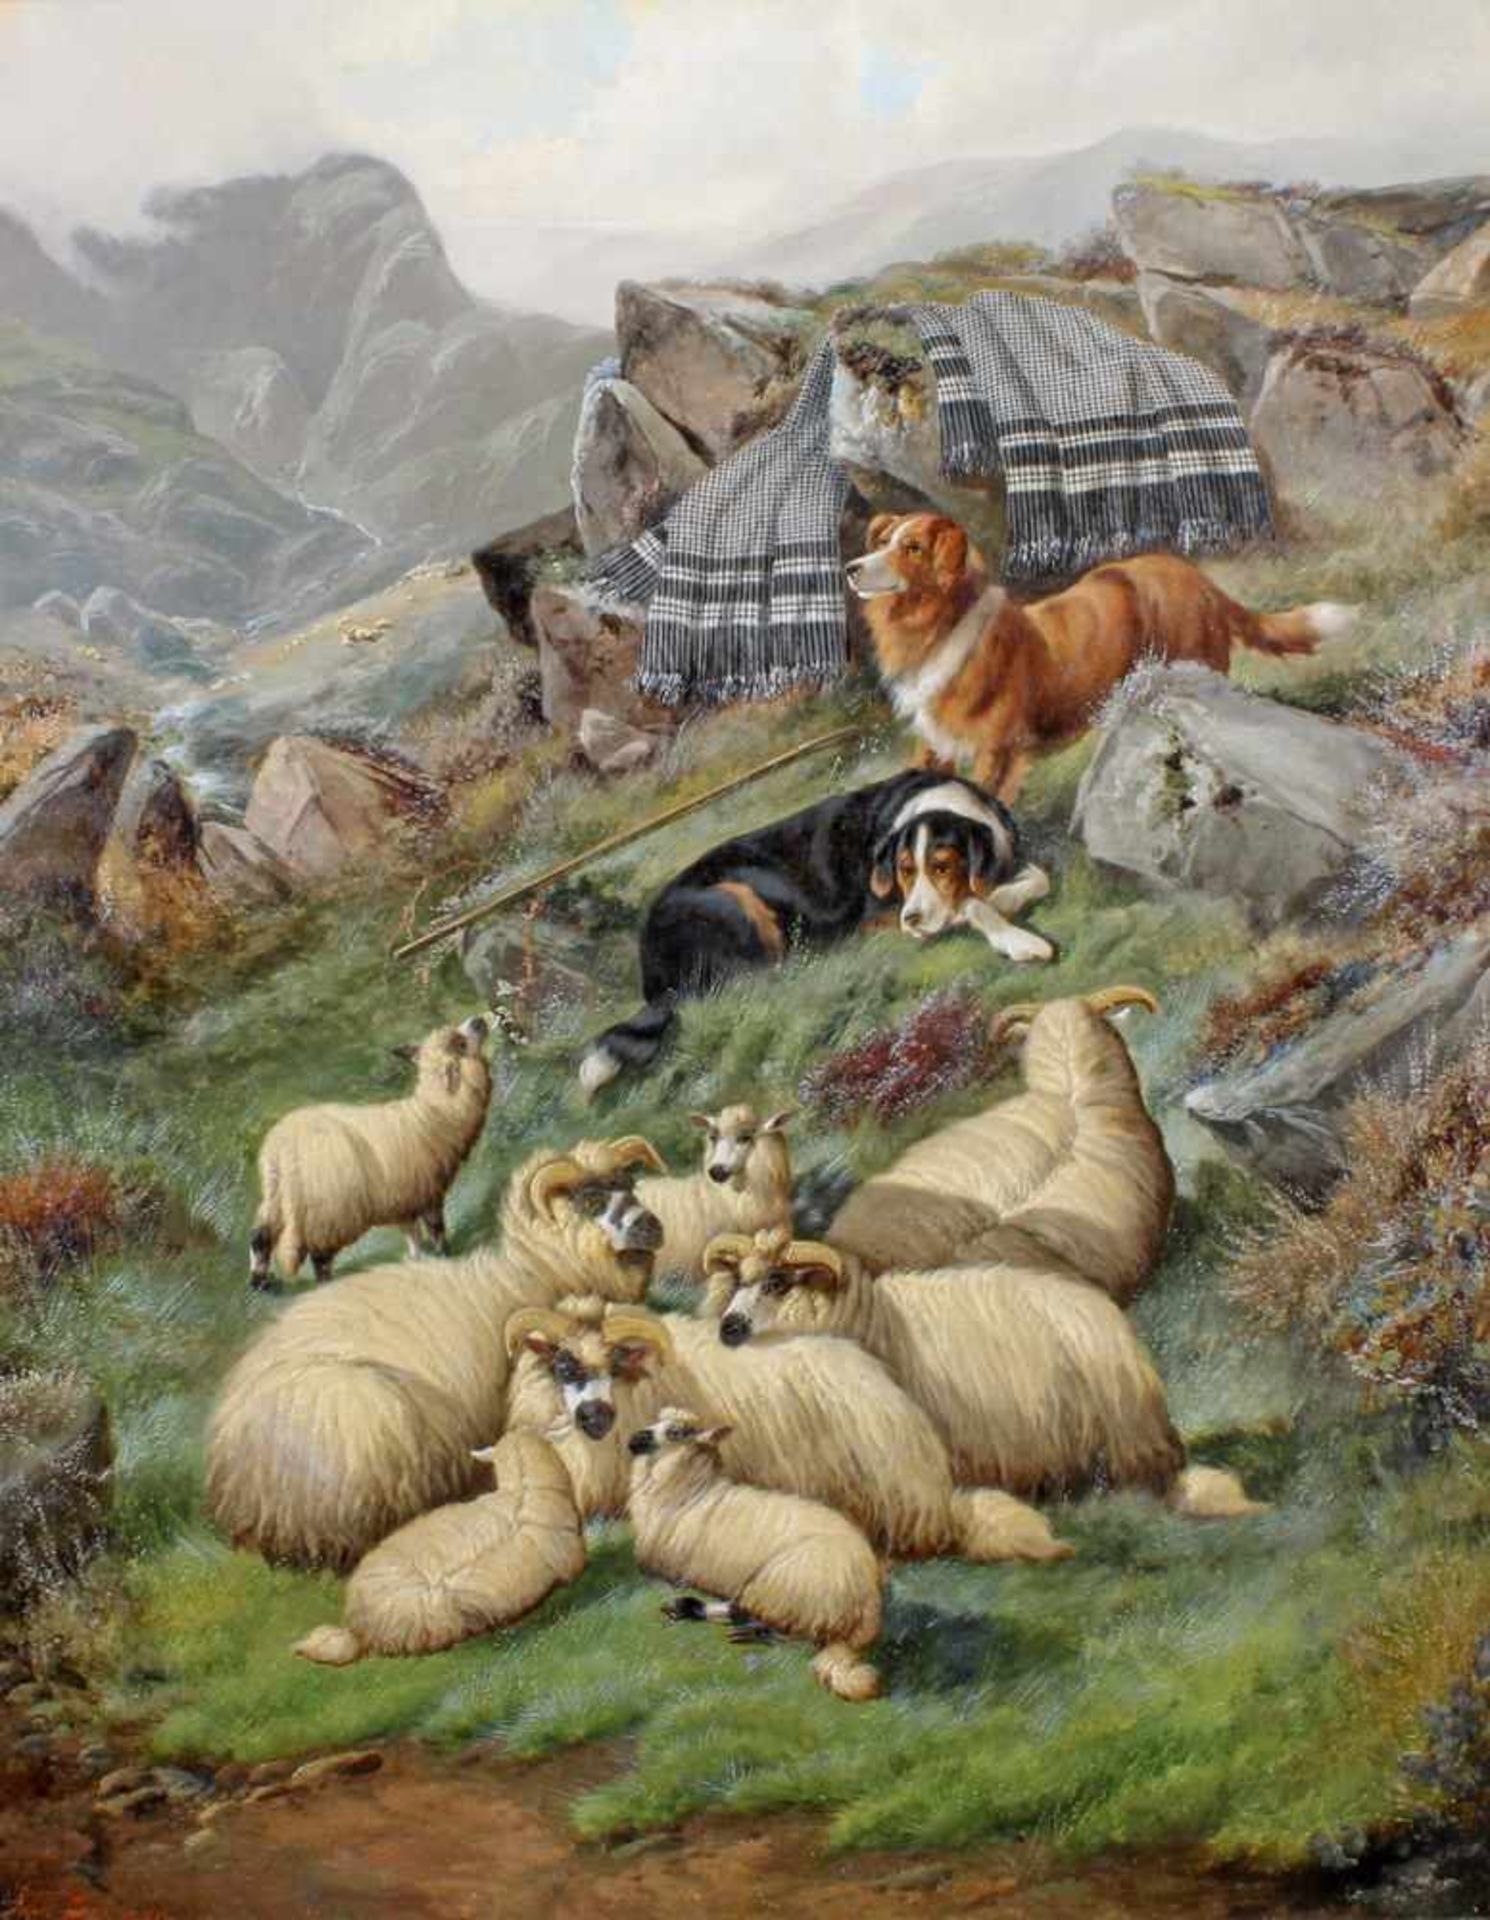 Barker, John (1811 - 1886, britischer Maler ländlicher Szenen, häufig mit Hunden und Schafen), "